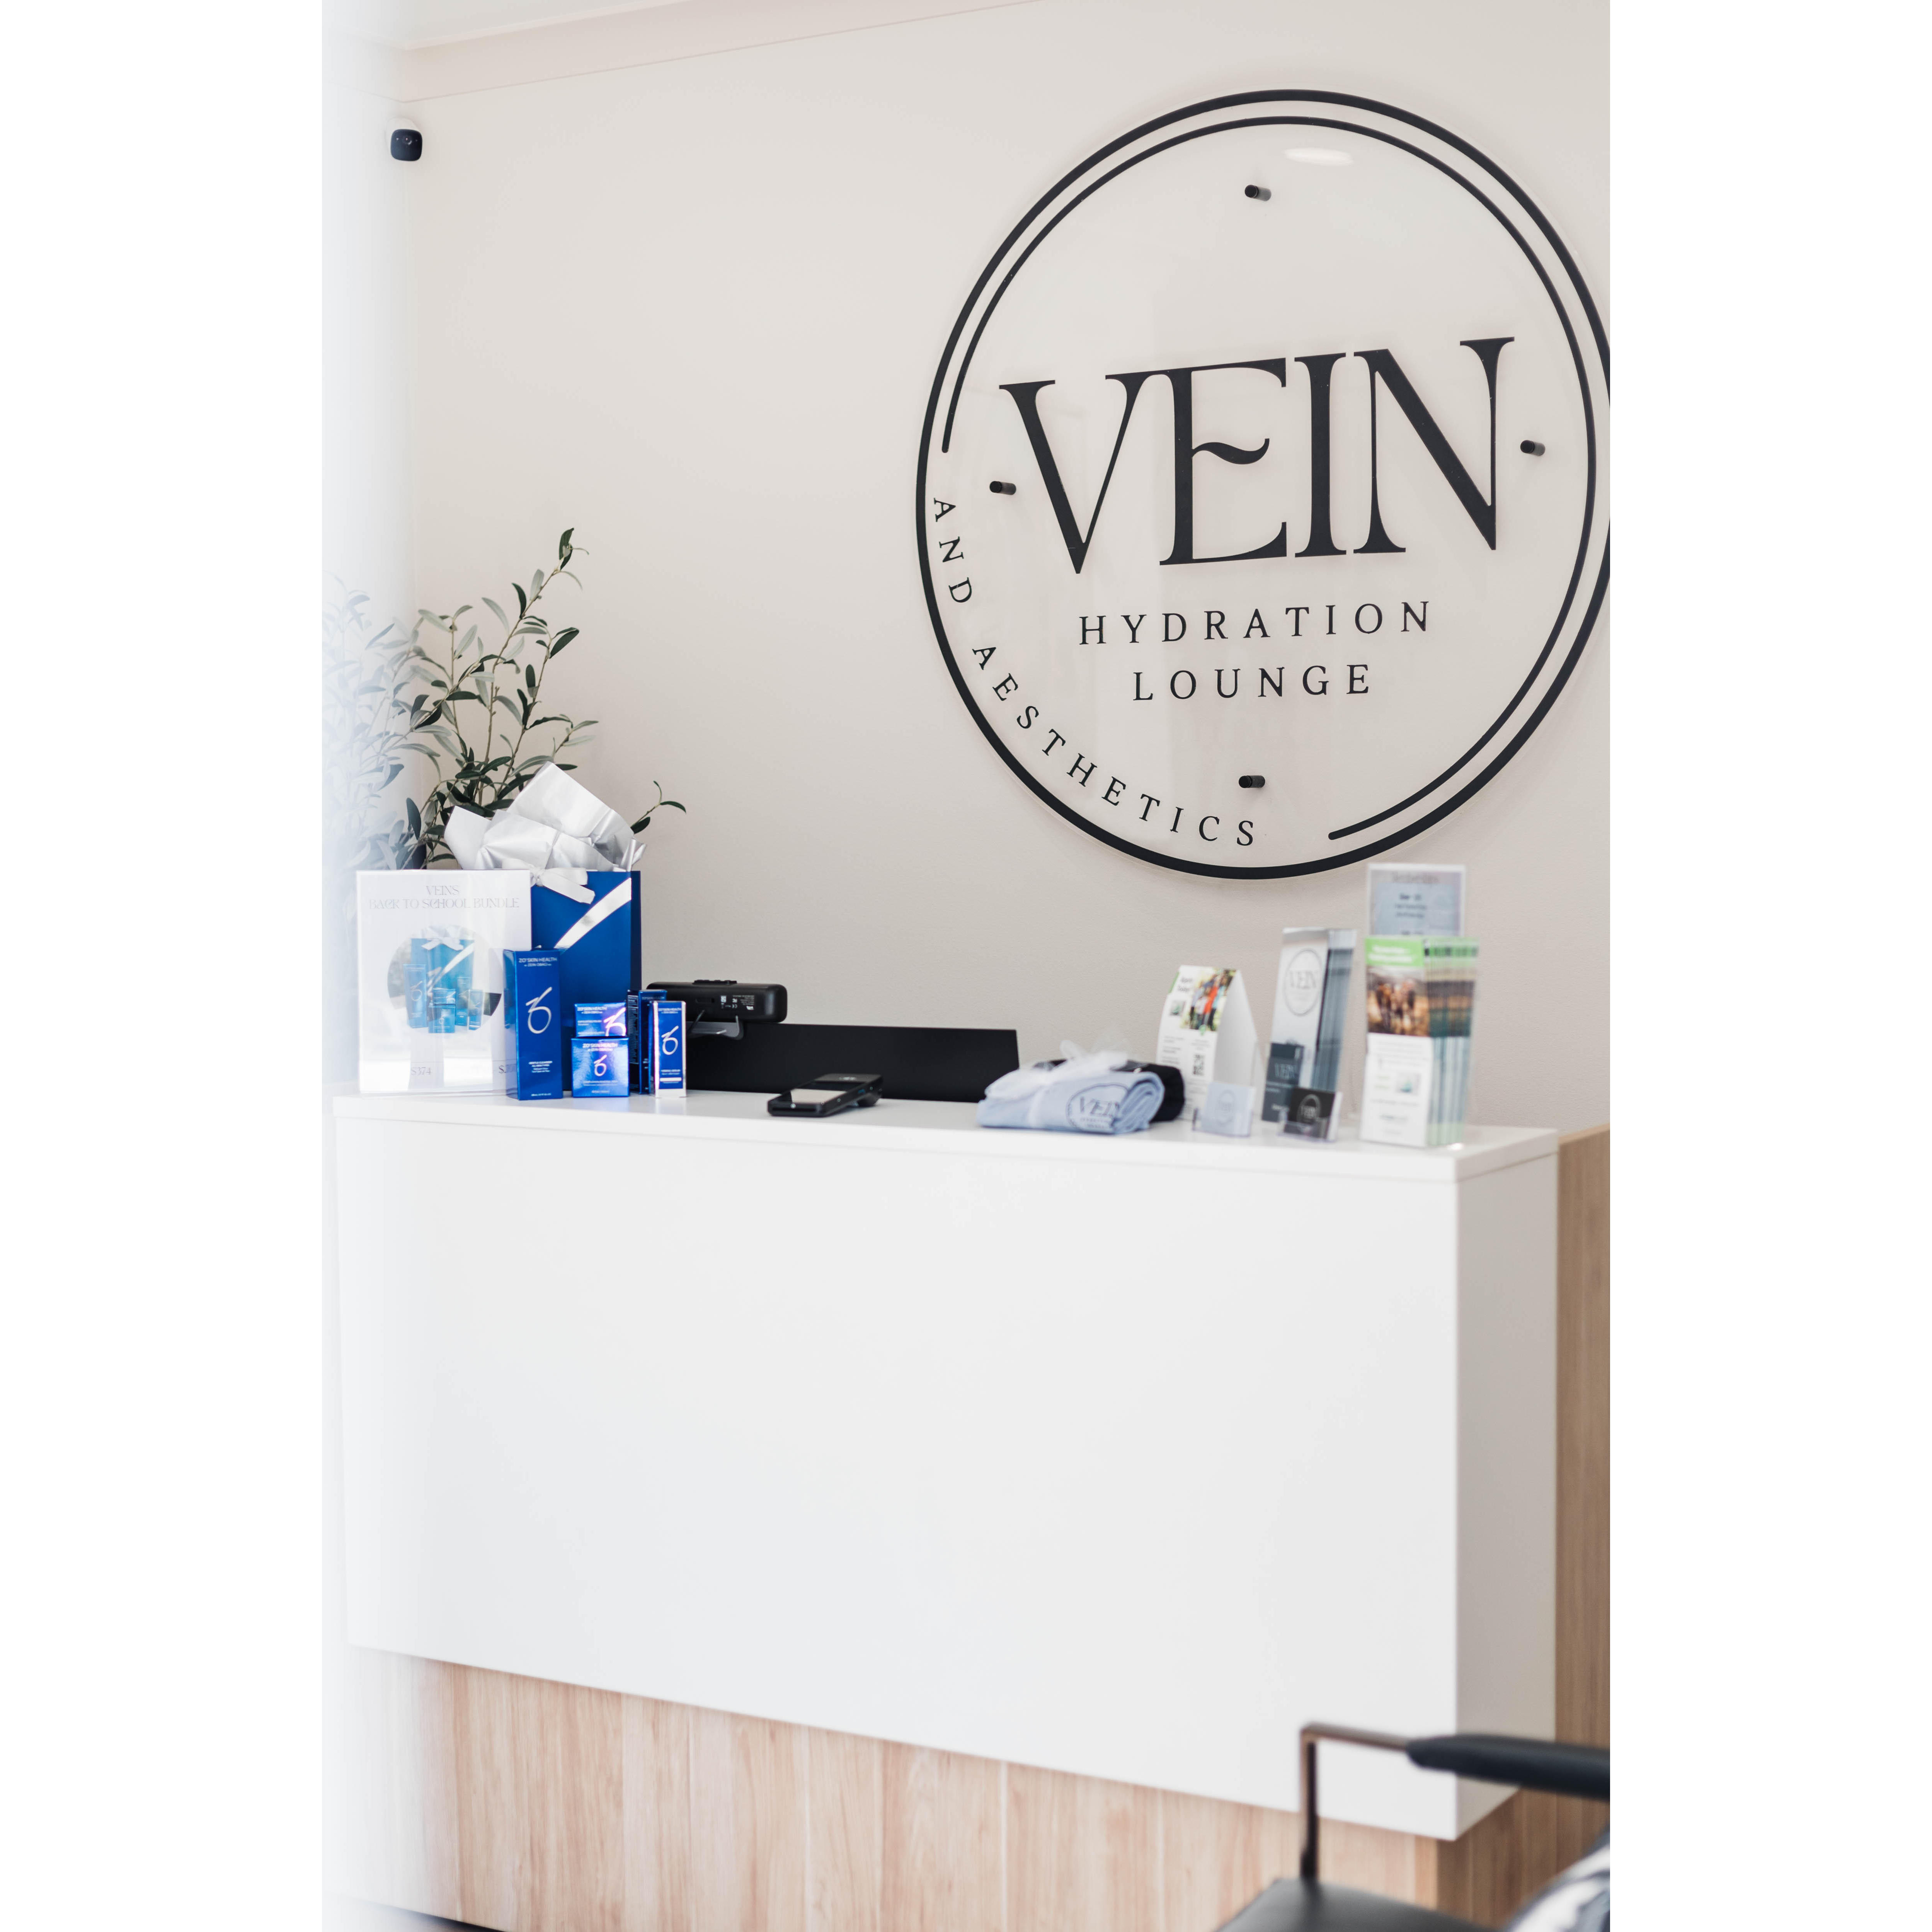 Vein Hydration Lounge + Aesthetics